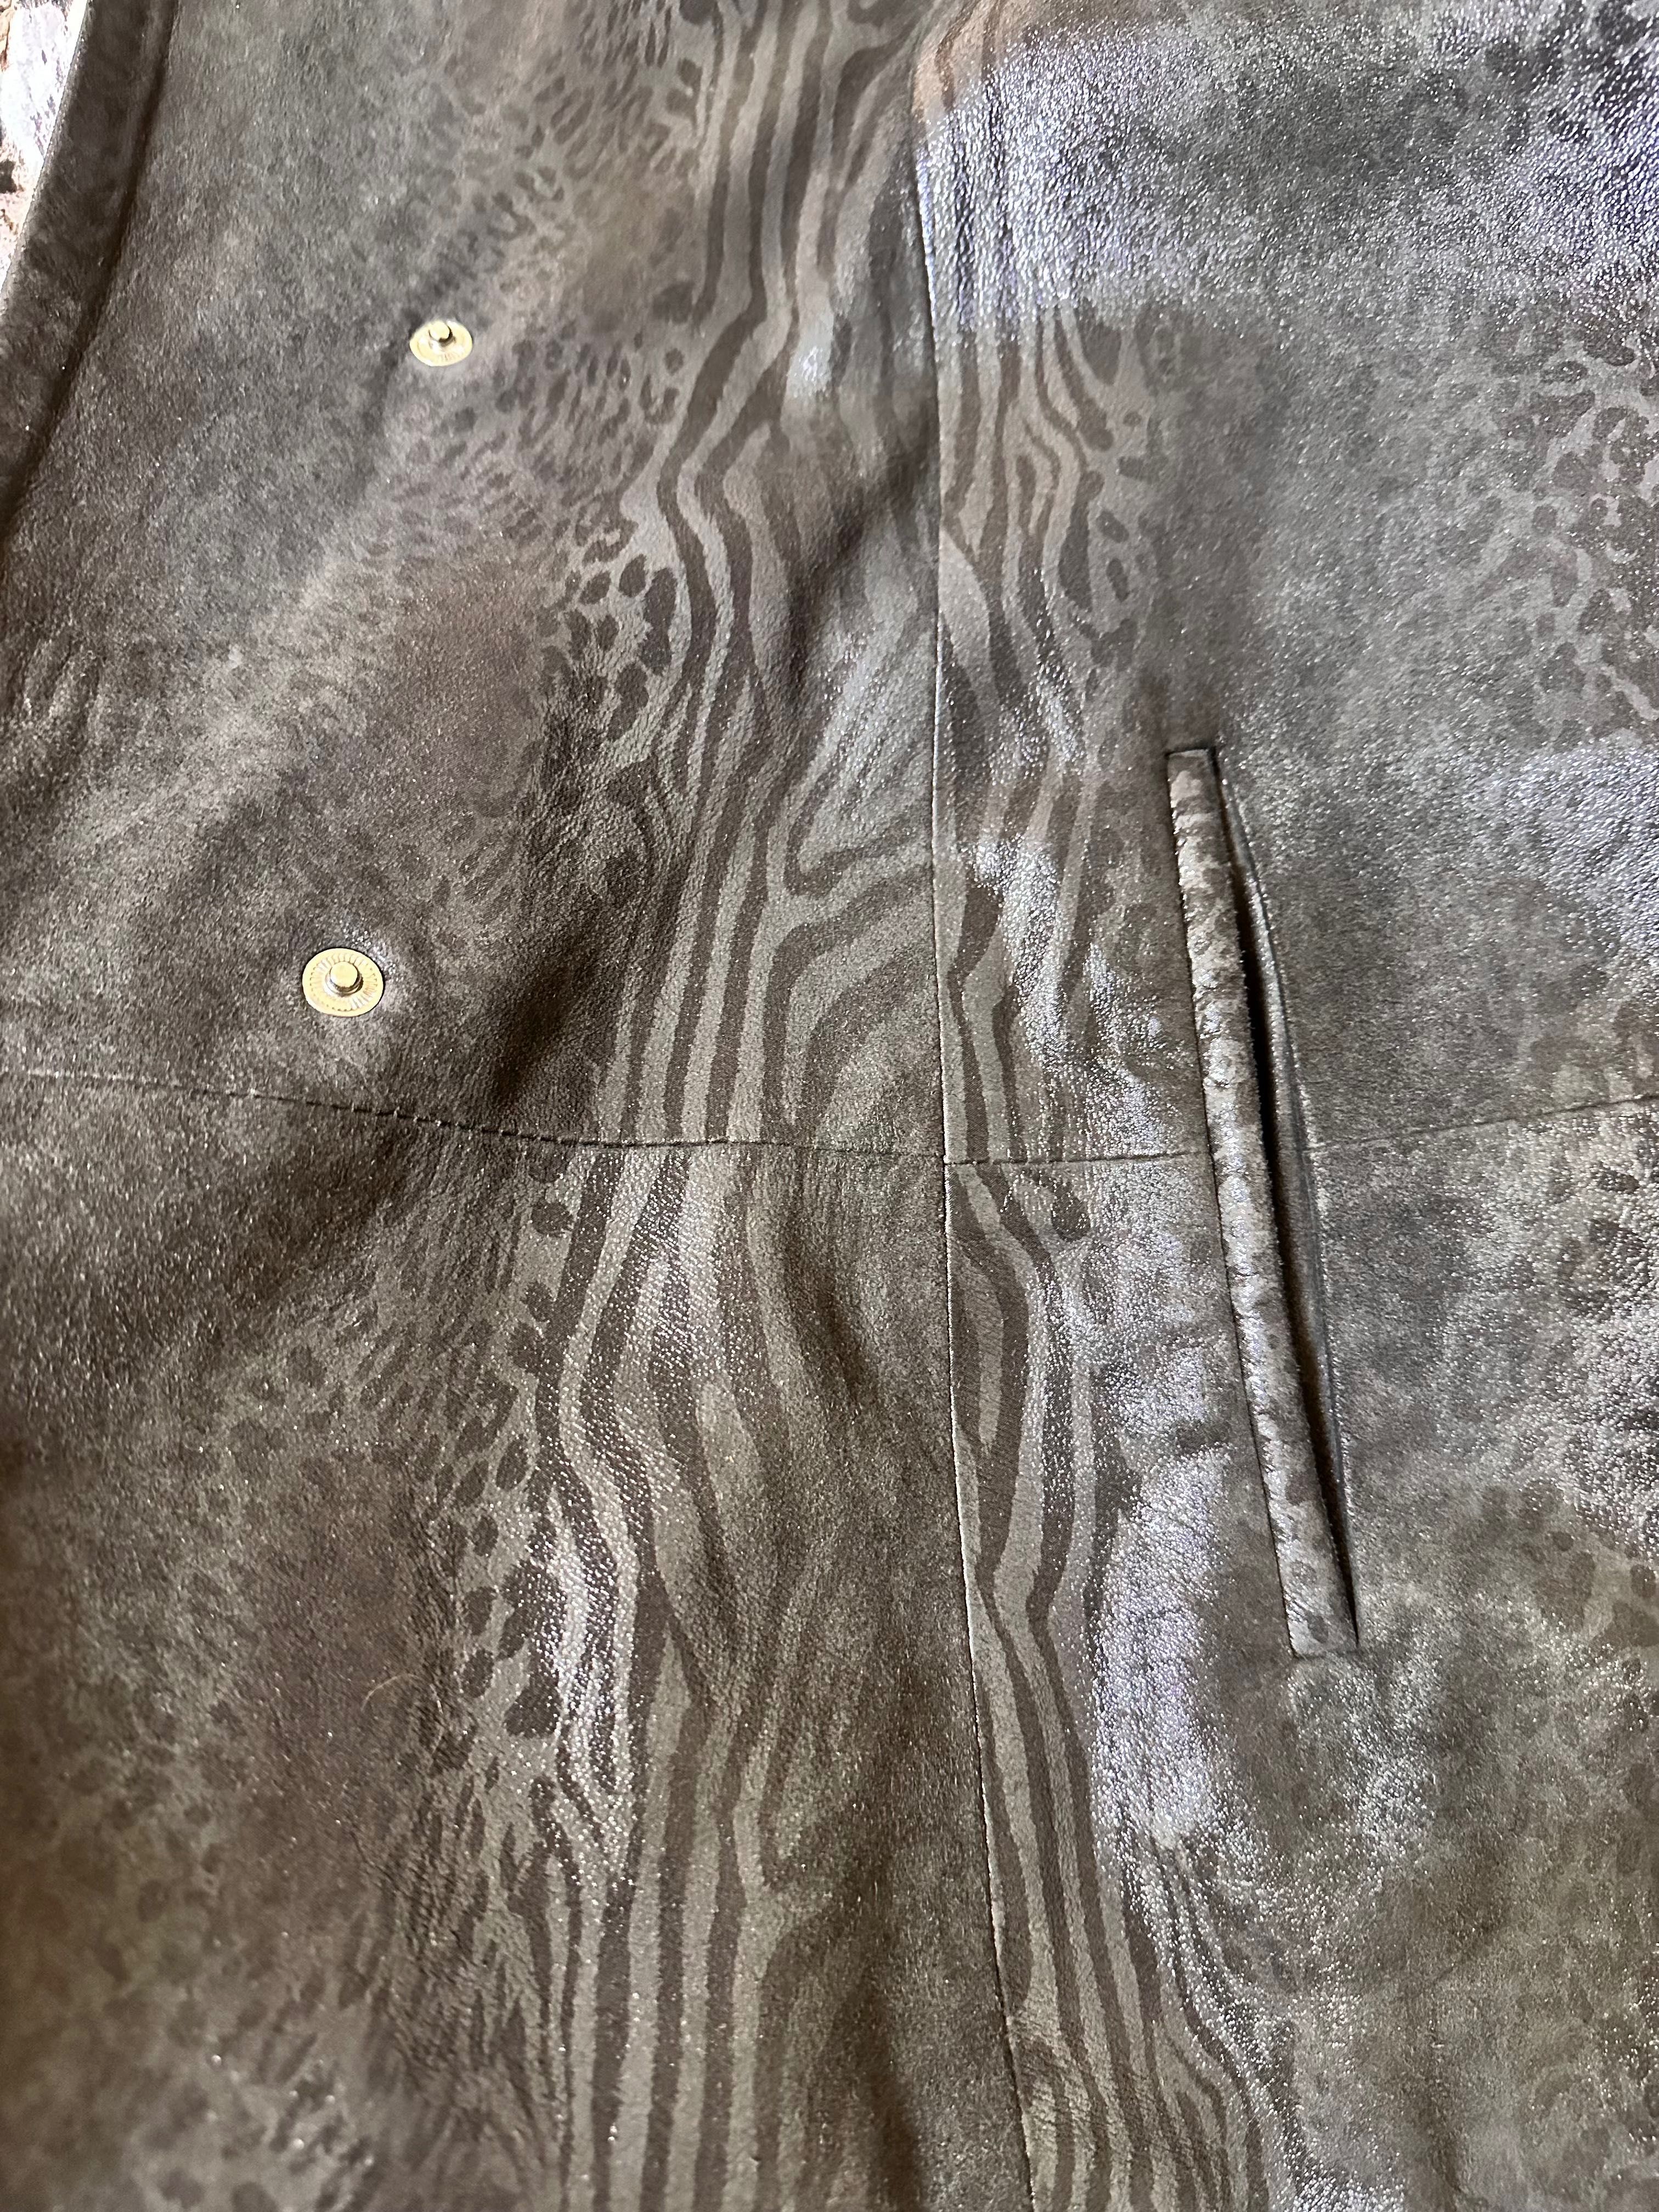 Кожаная куртка с лазерной обработкой 50-52 р. XXL